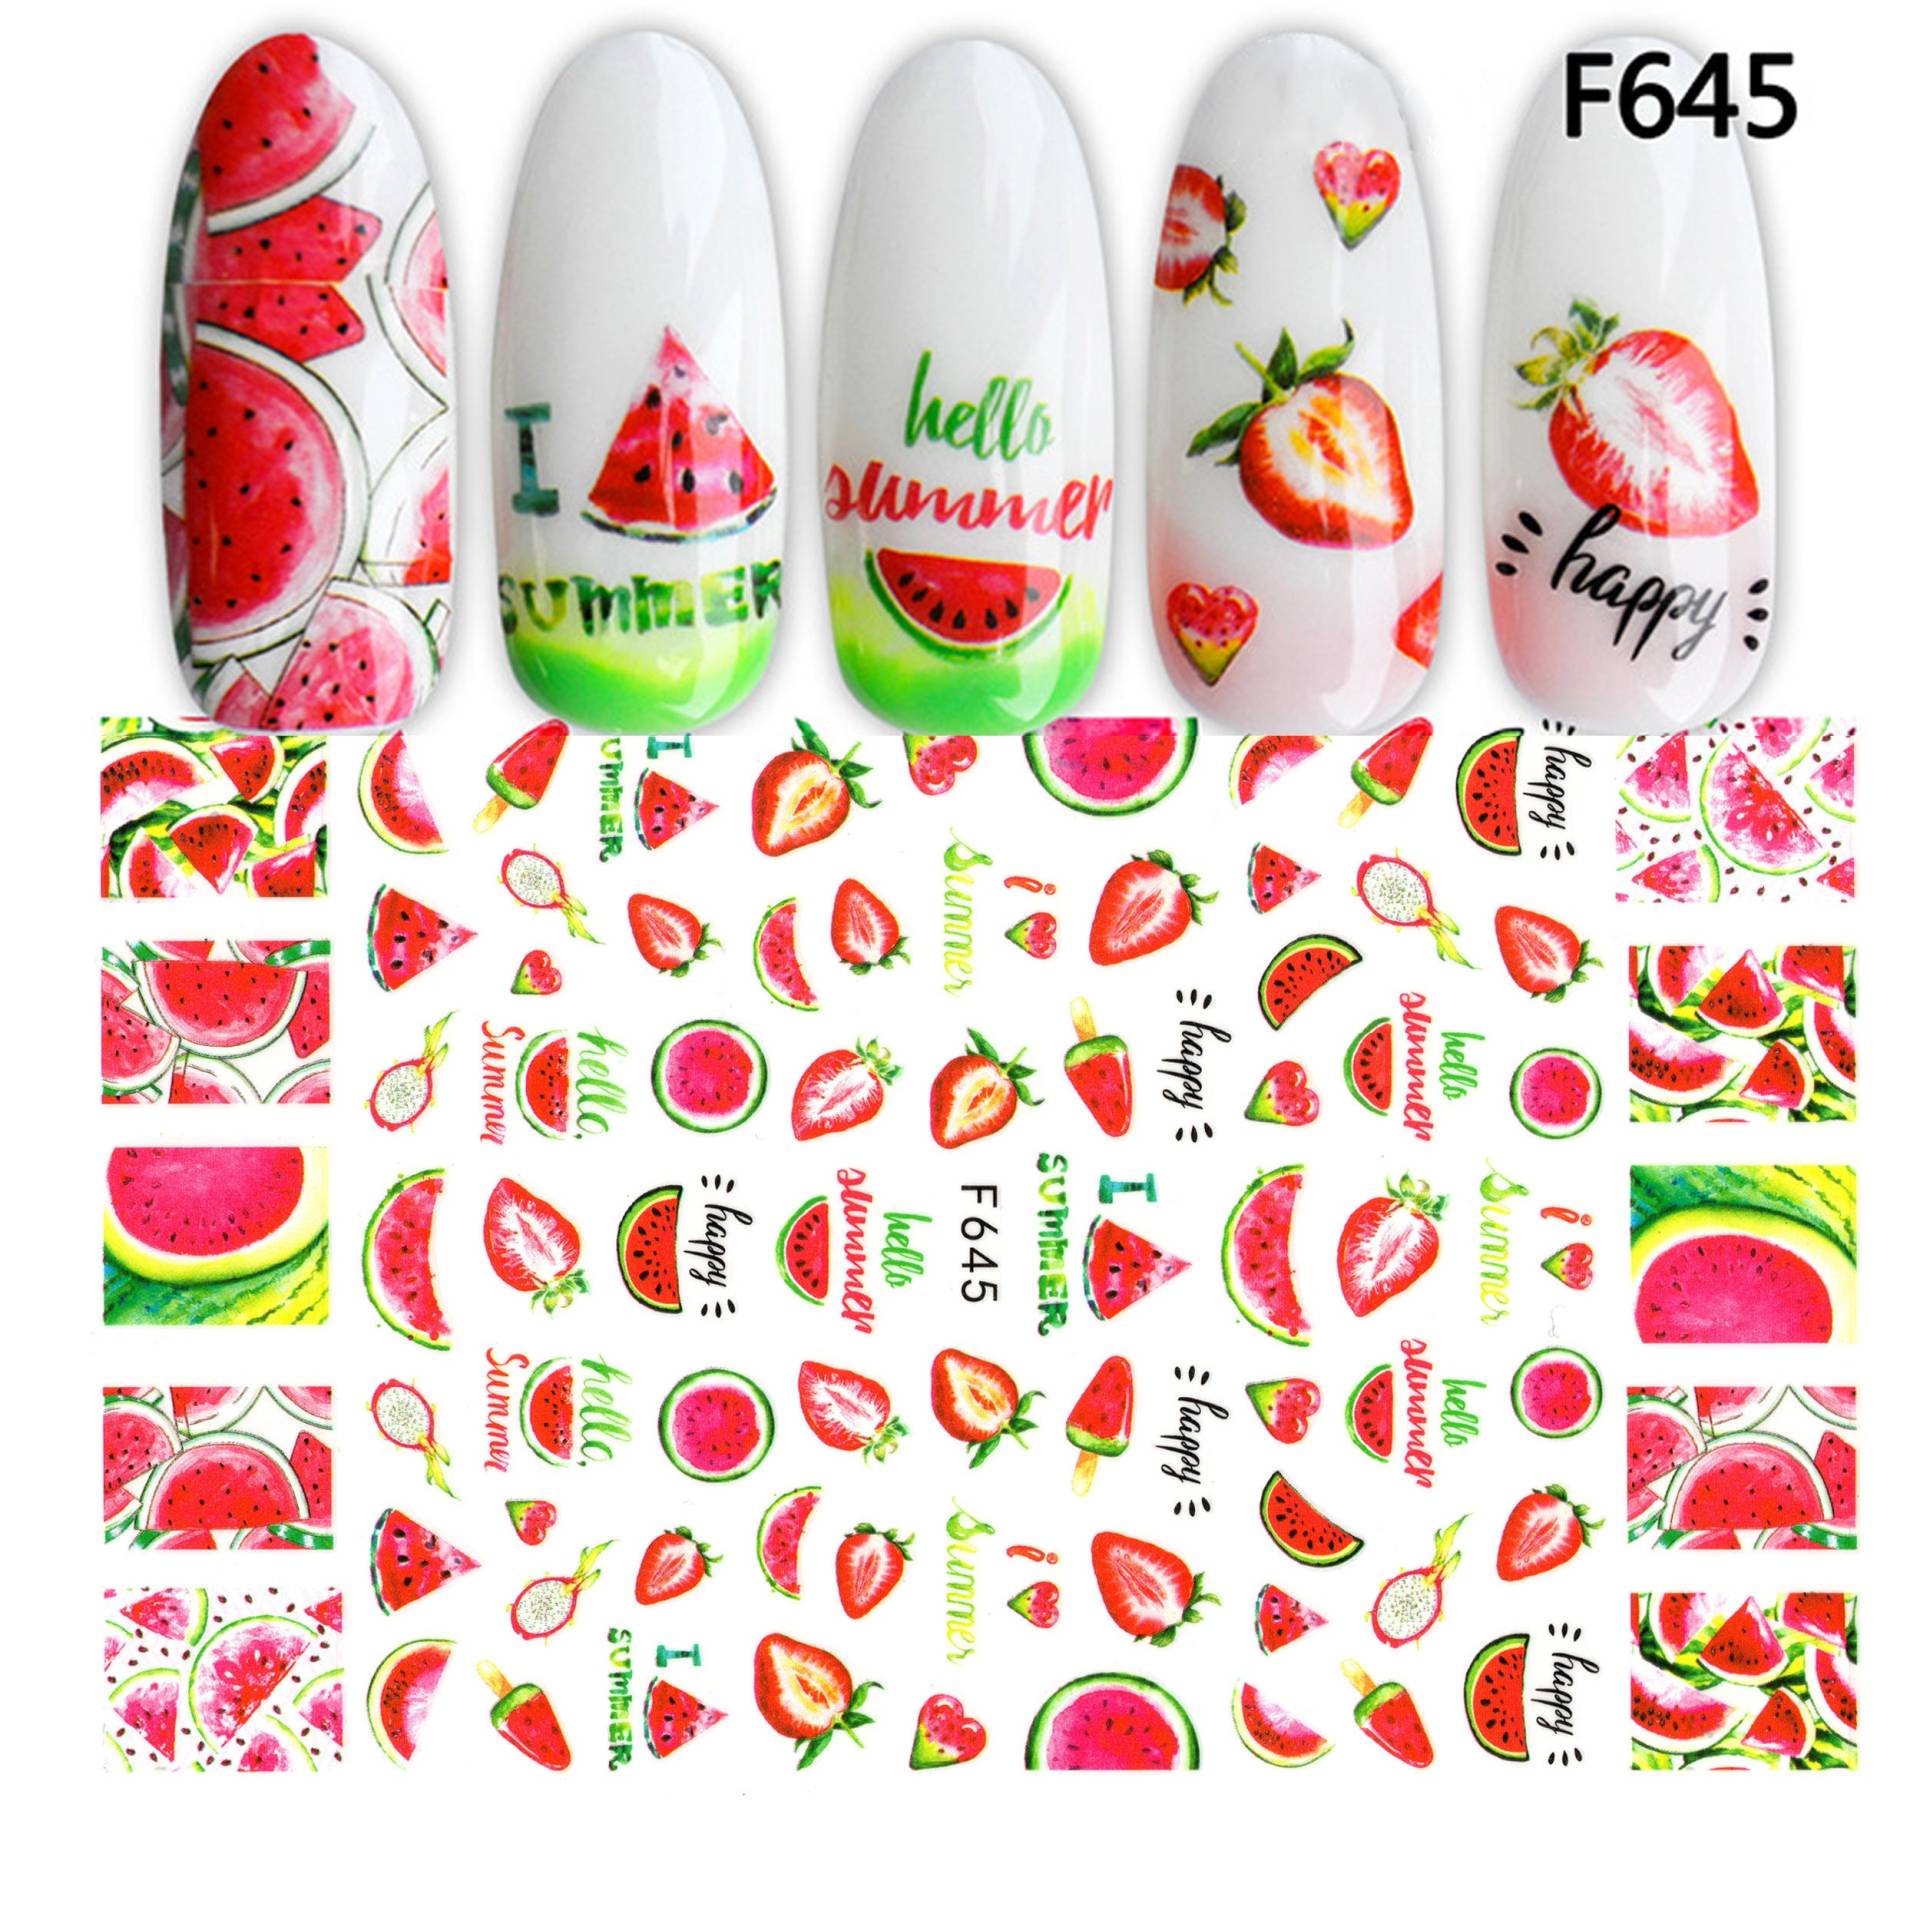 Hello Summer Süße Wassermelone Erdbeere & Drachenfrucht Nail Art Sticker | Rubinrote Süße Frucht Selbstklebende Nagelabziehbilder von Etsy - NailQueenNYC